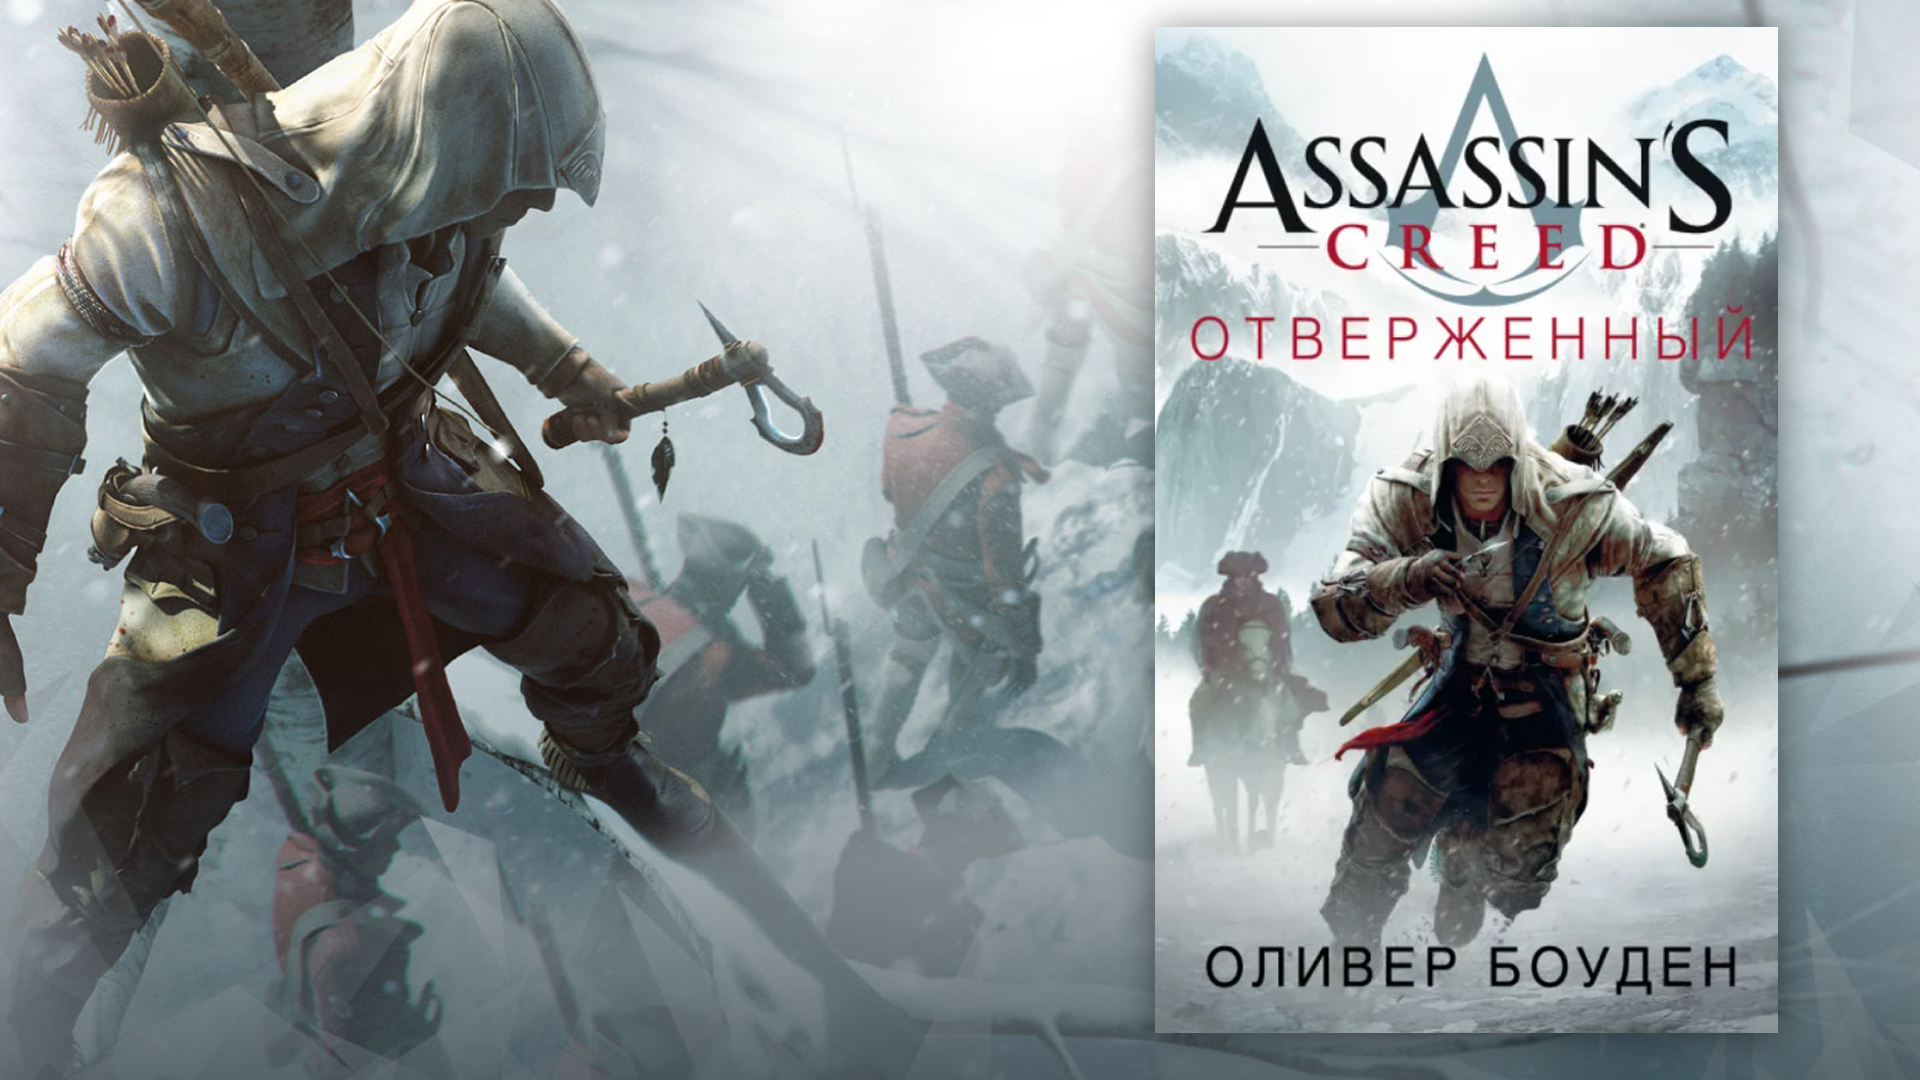 Обложка книги "Assassin's Creed Отверженный"